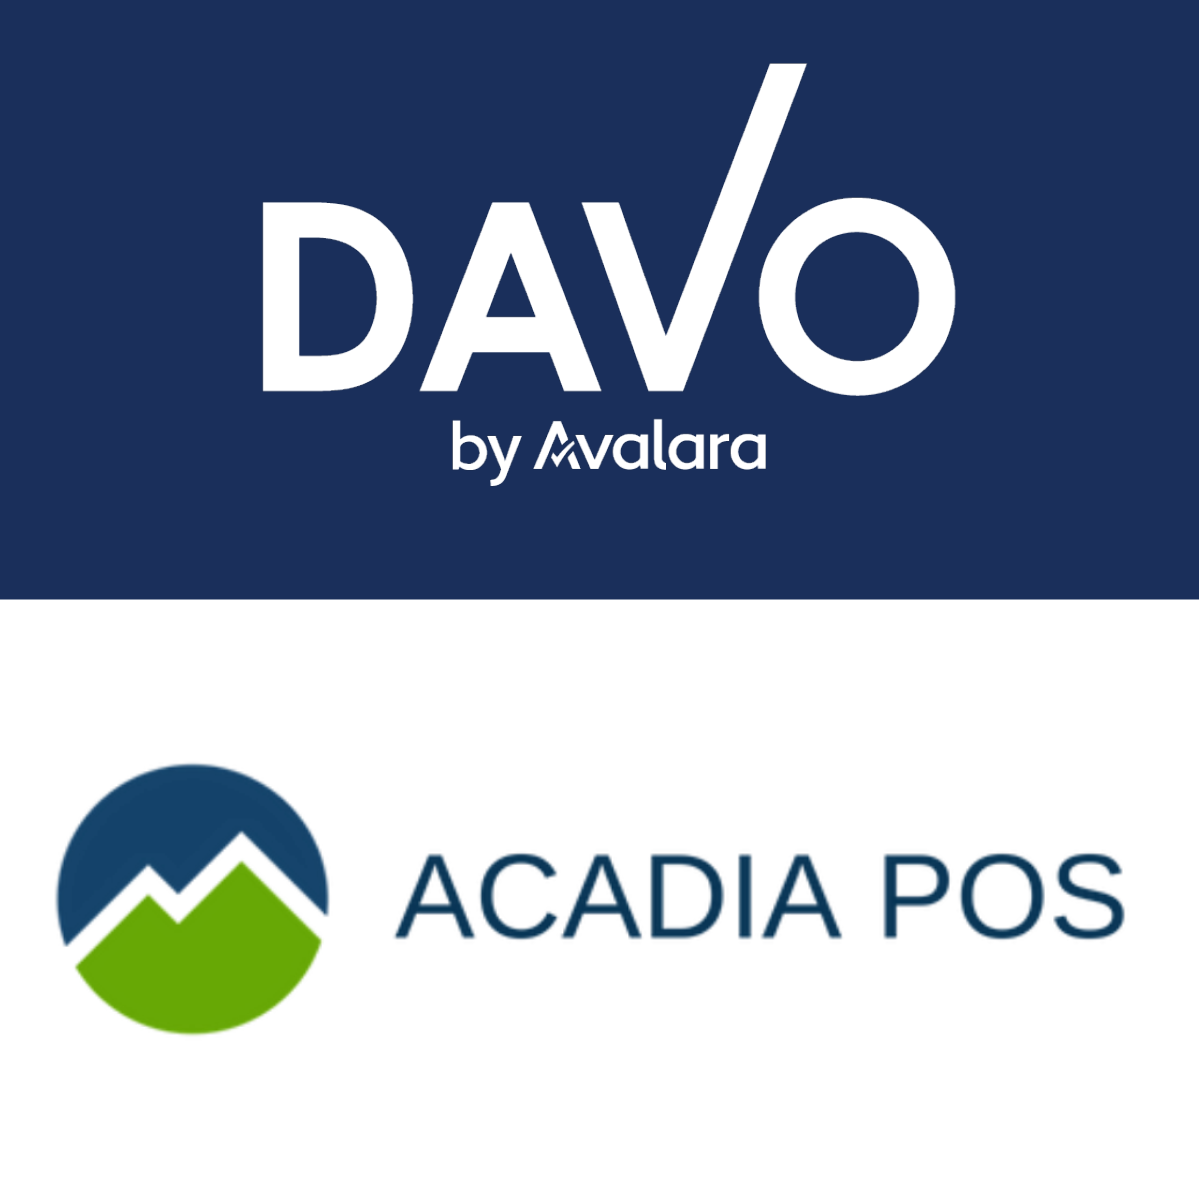 DAVO se asocia con Acadia POS